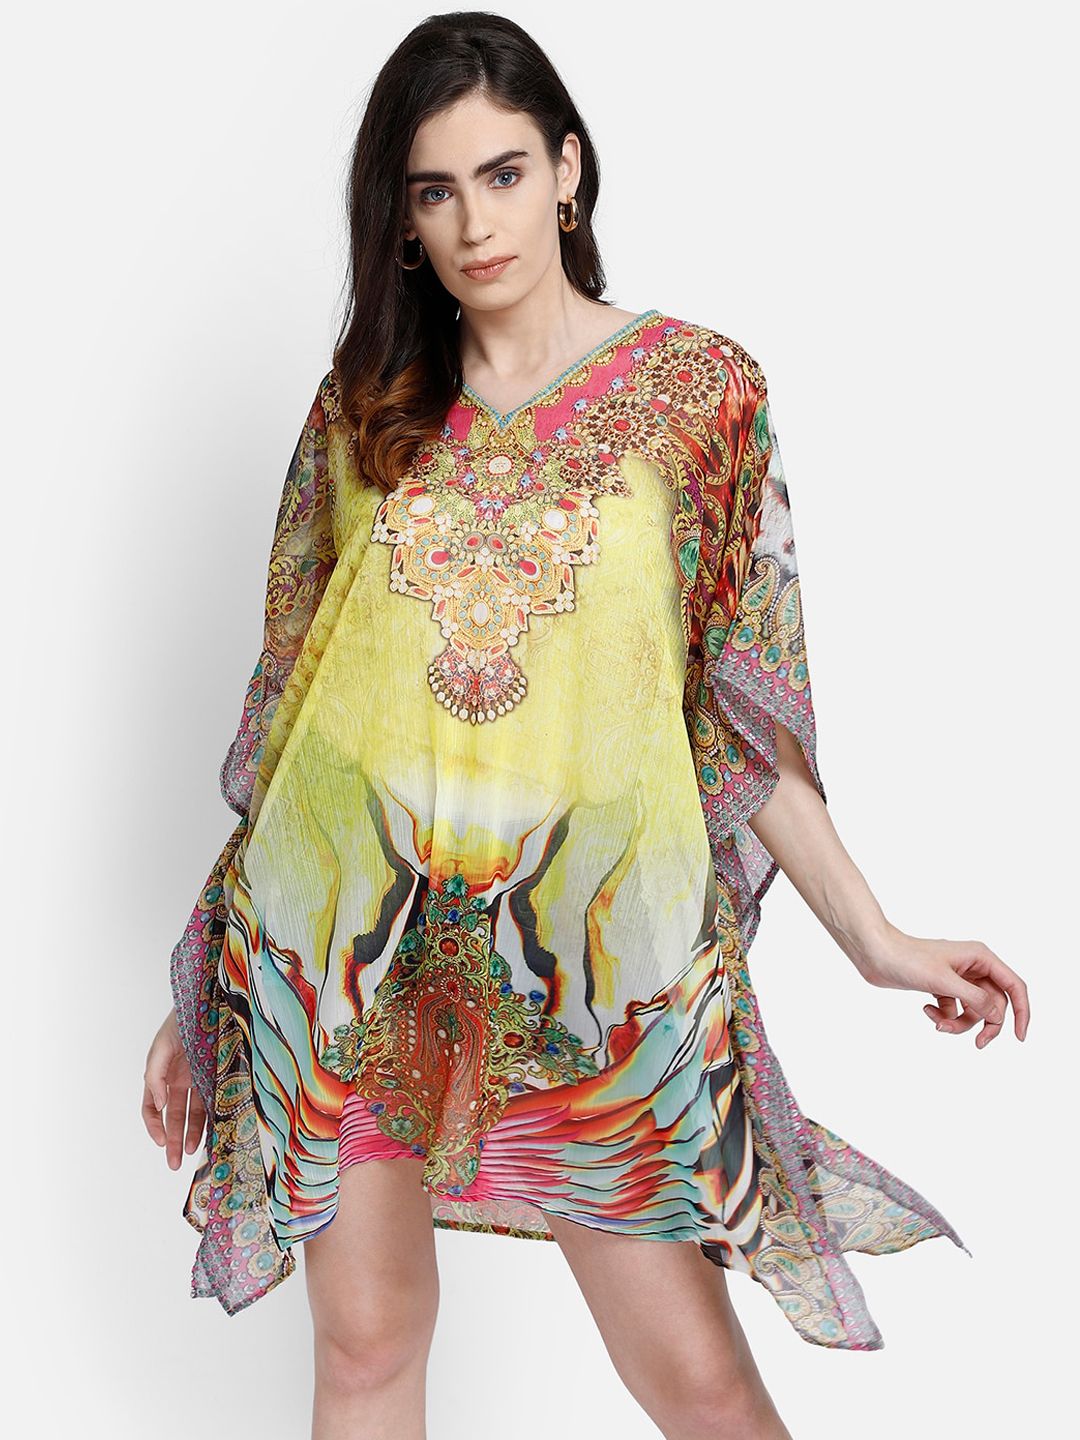 Aditi Wasan Multicolor Printed Kaftan Dress Price in India